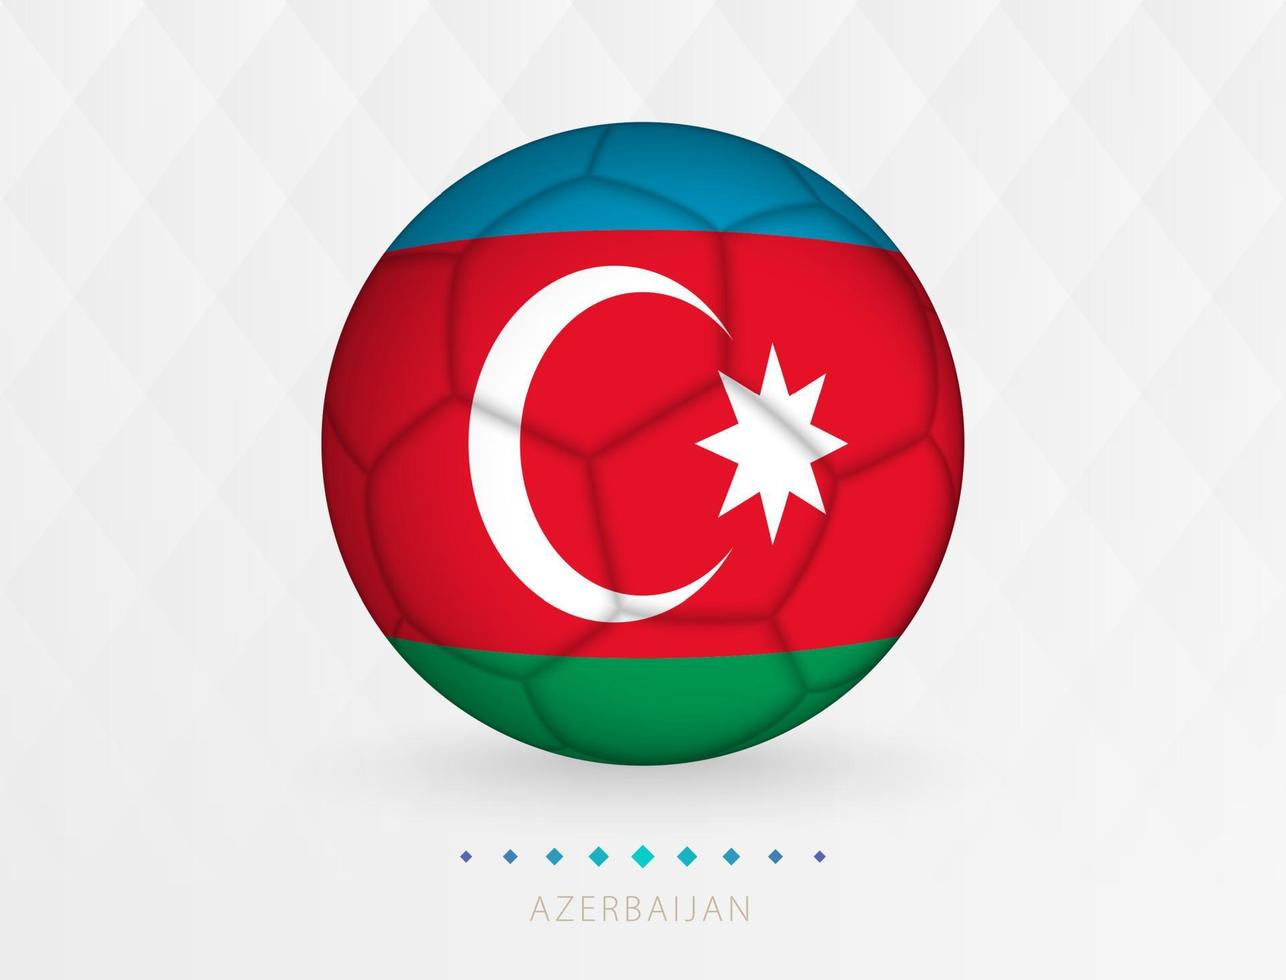 Amerikaans voetbal bal met Azerbeidzjan vlag patroon, voetbal bal met vlag van Azerbeidzjan nationaal team. vector